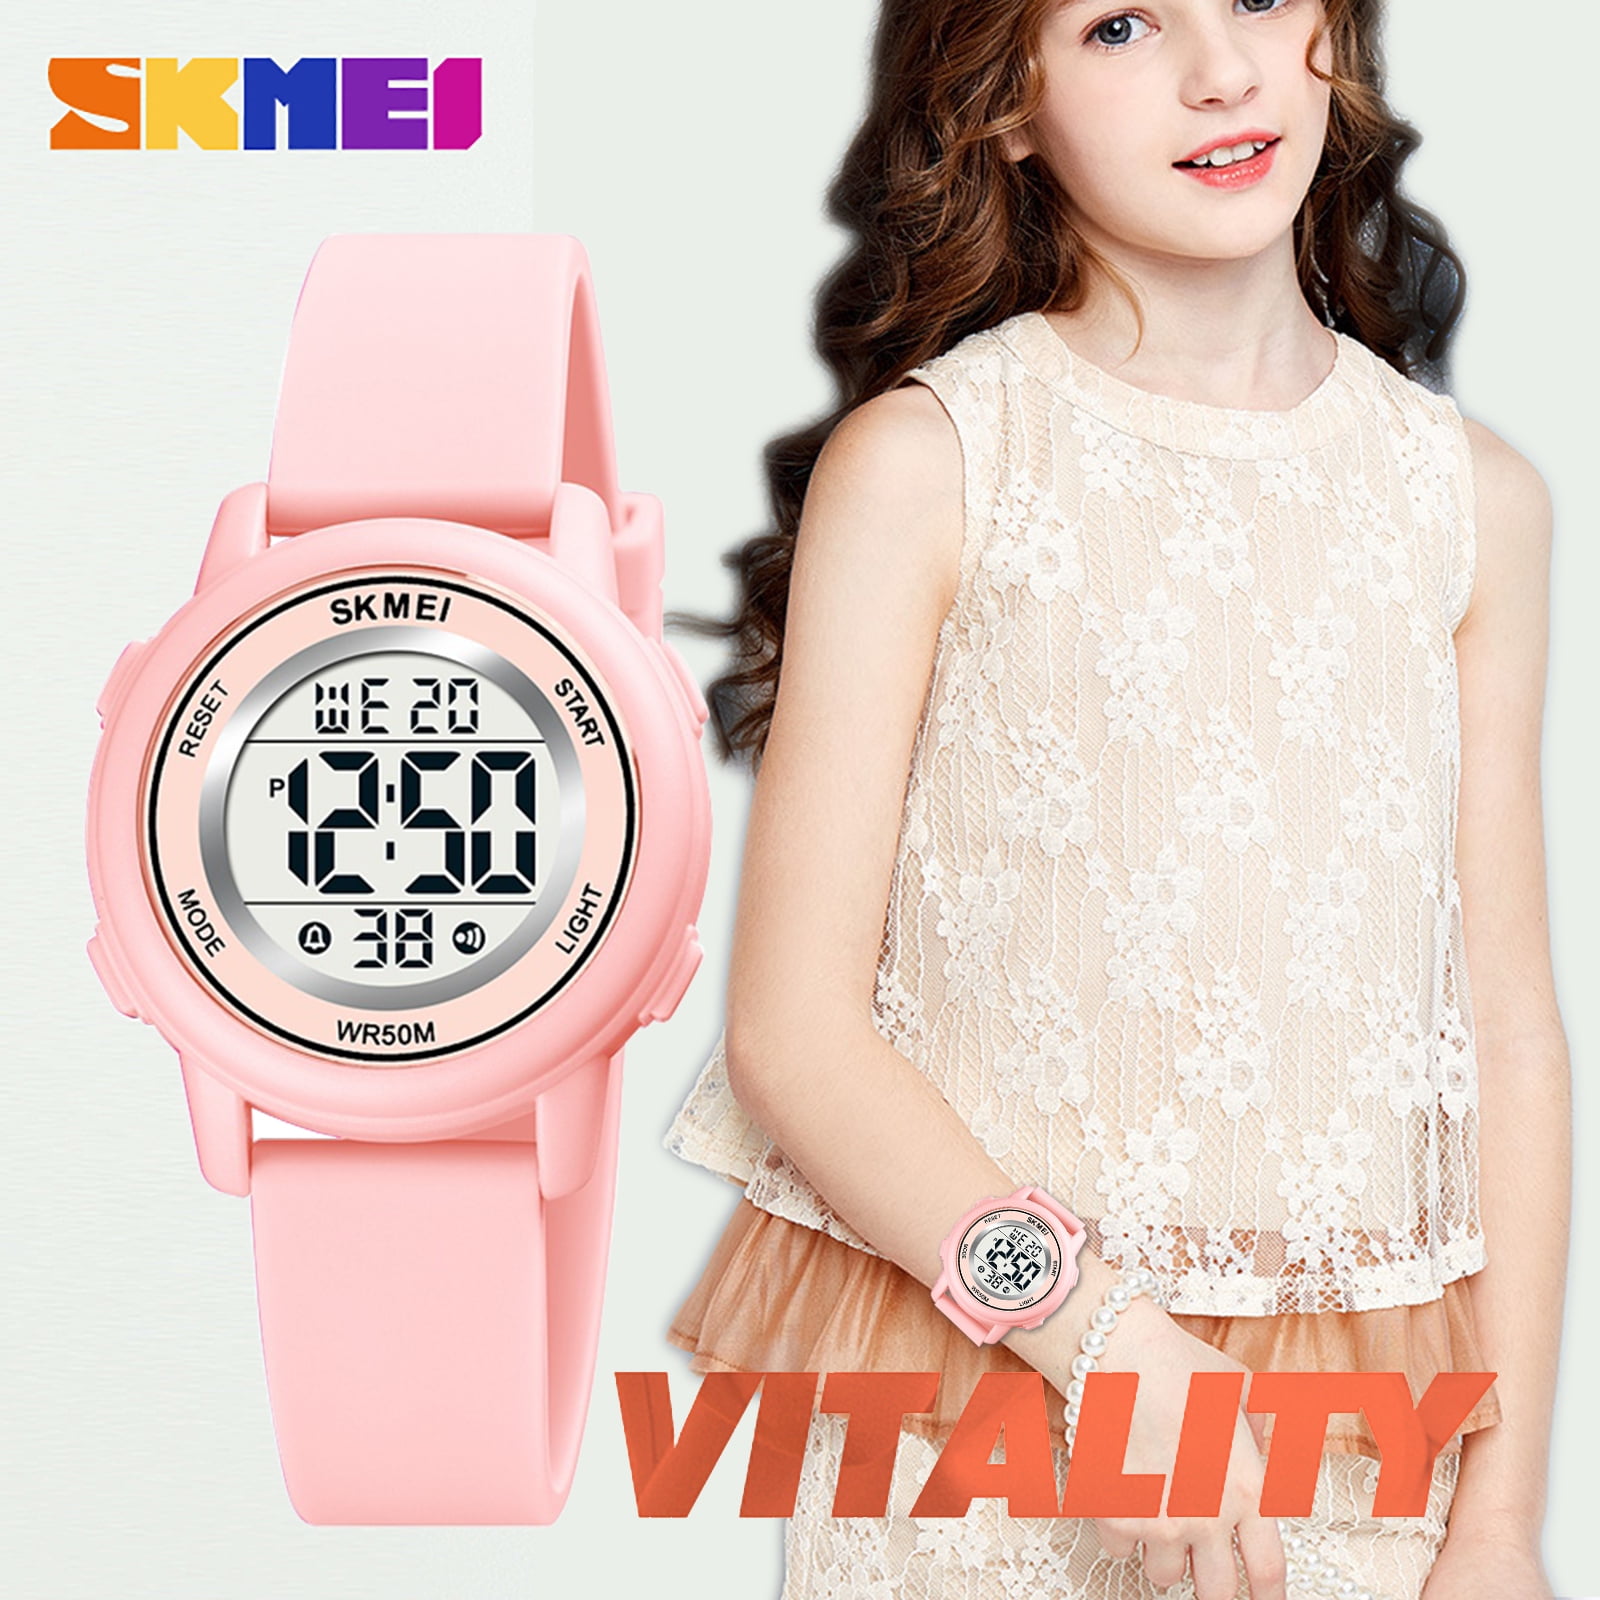 SKMEI Kids Waterproof Sports Watch, Pink